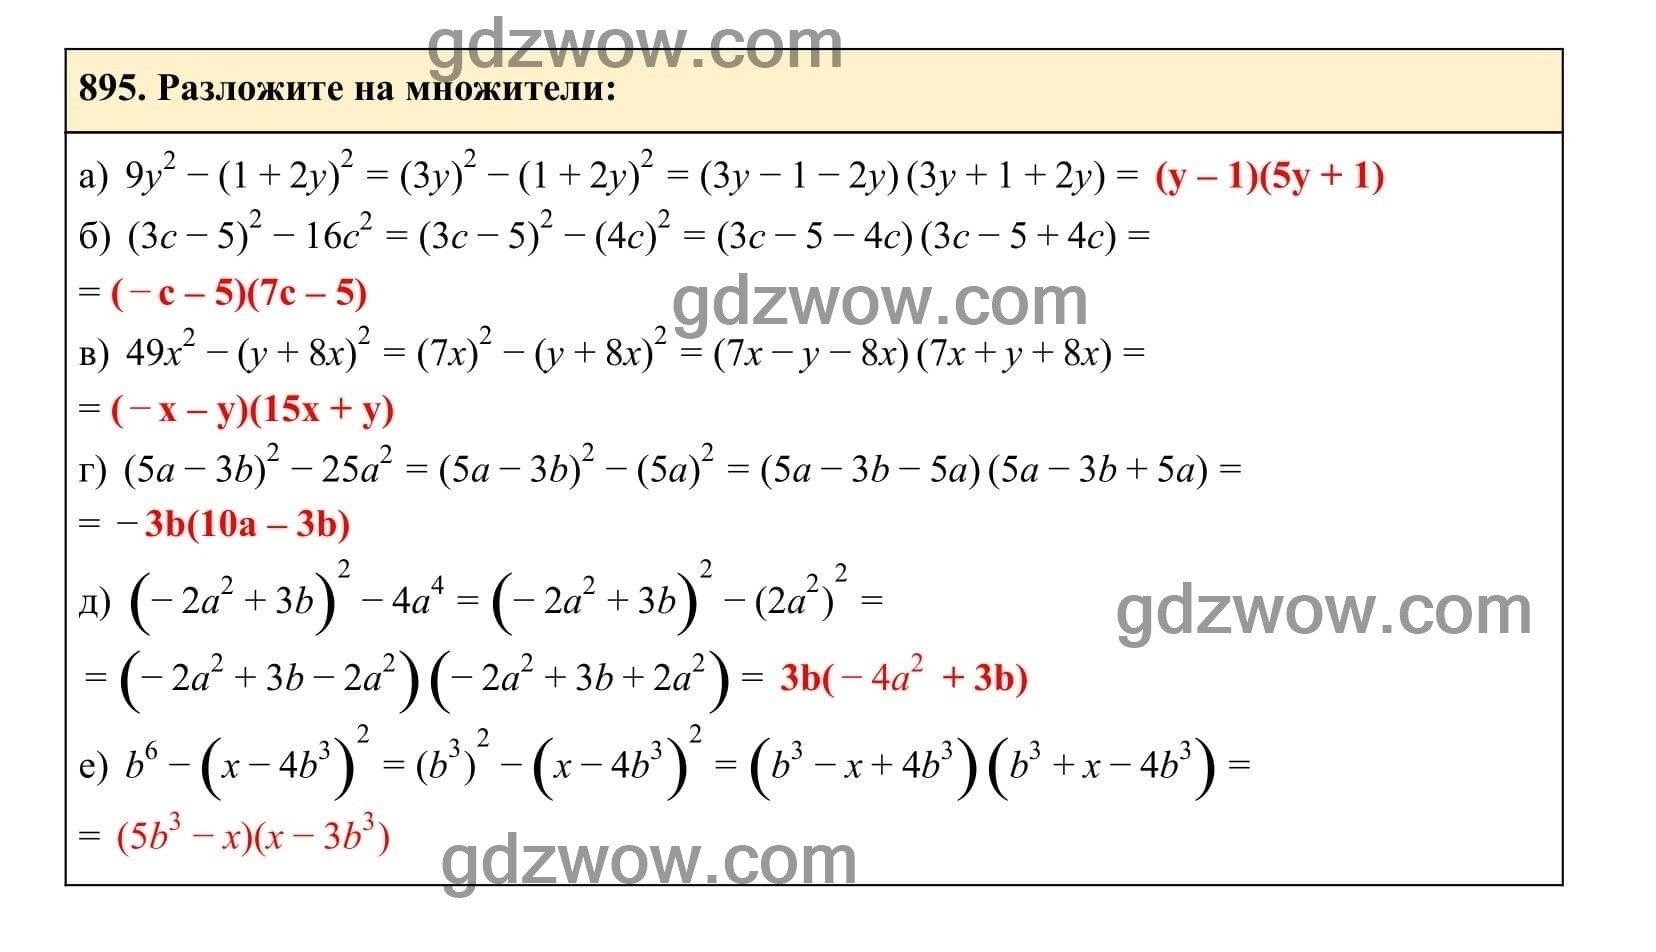 Упражнение 895 - ГДЗ по Алгебре 7 класс Учебник Макарычев (решебник) - GDZwow